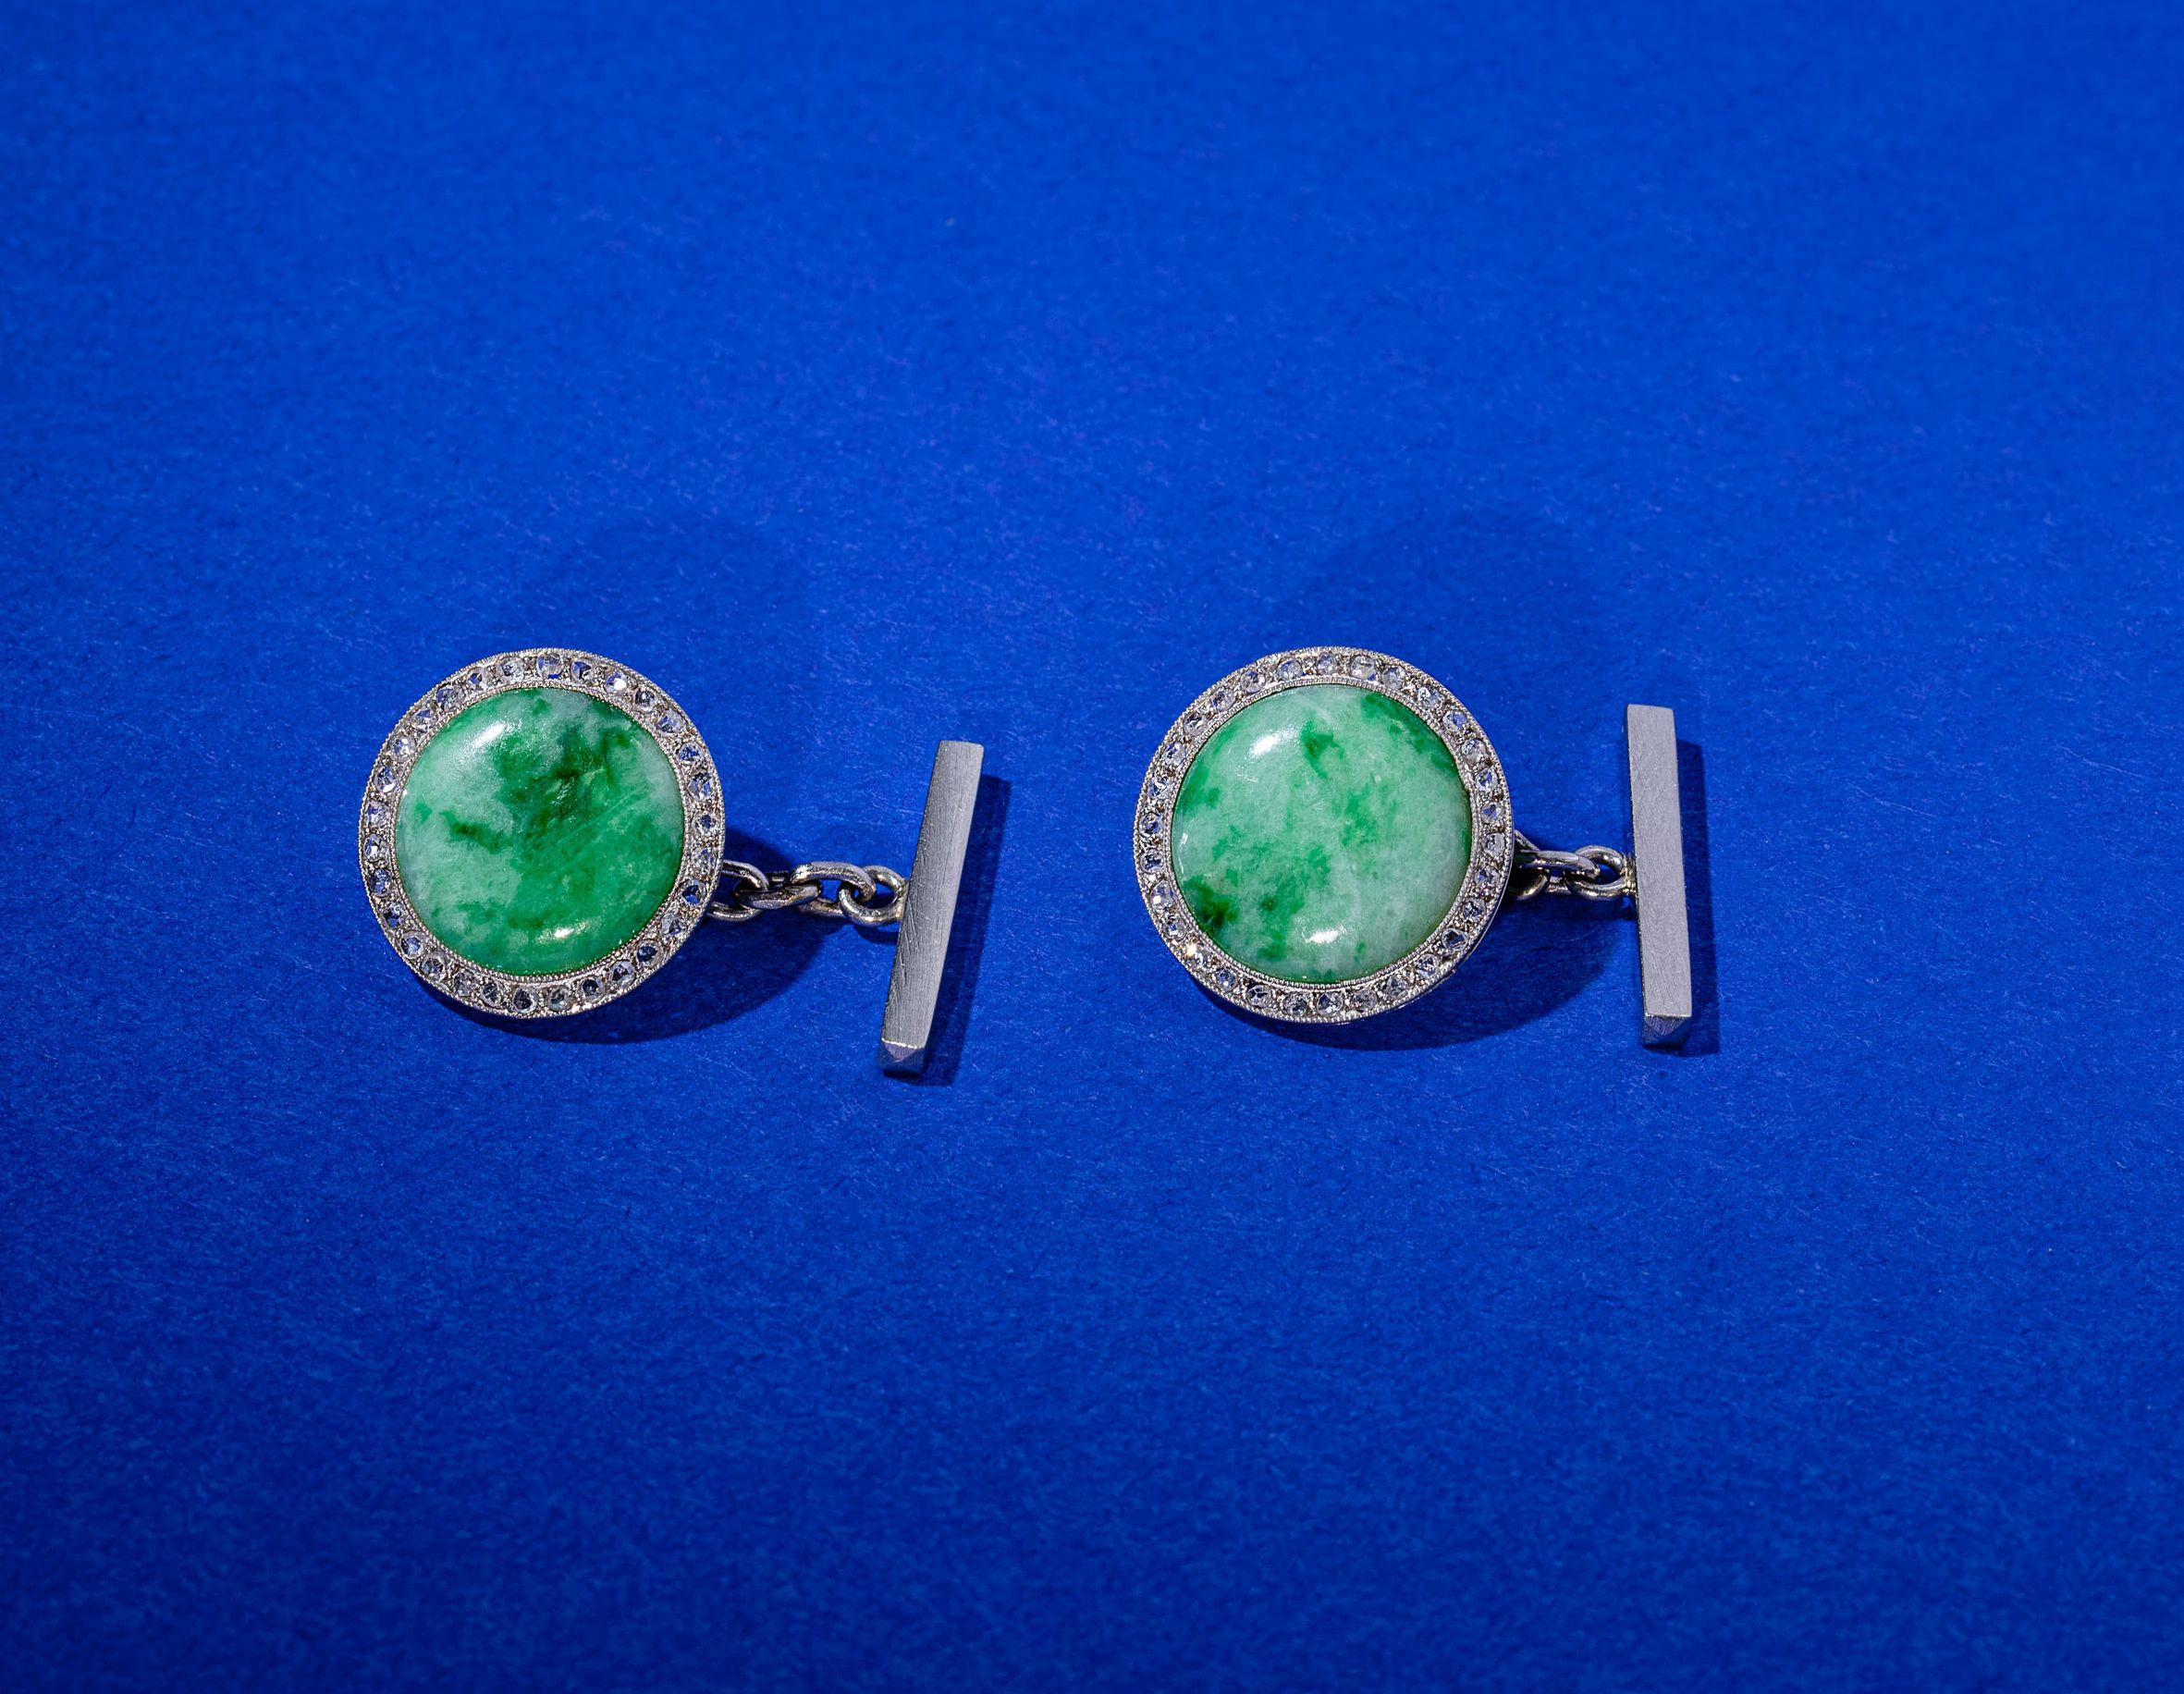 Magnifiques boutons de manchette en platine avec cabochons de jade encadrés de diamants taillés en rose.
Début du XXe siècle, marques d'essai et de fabrication françaises.